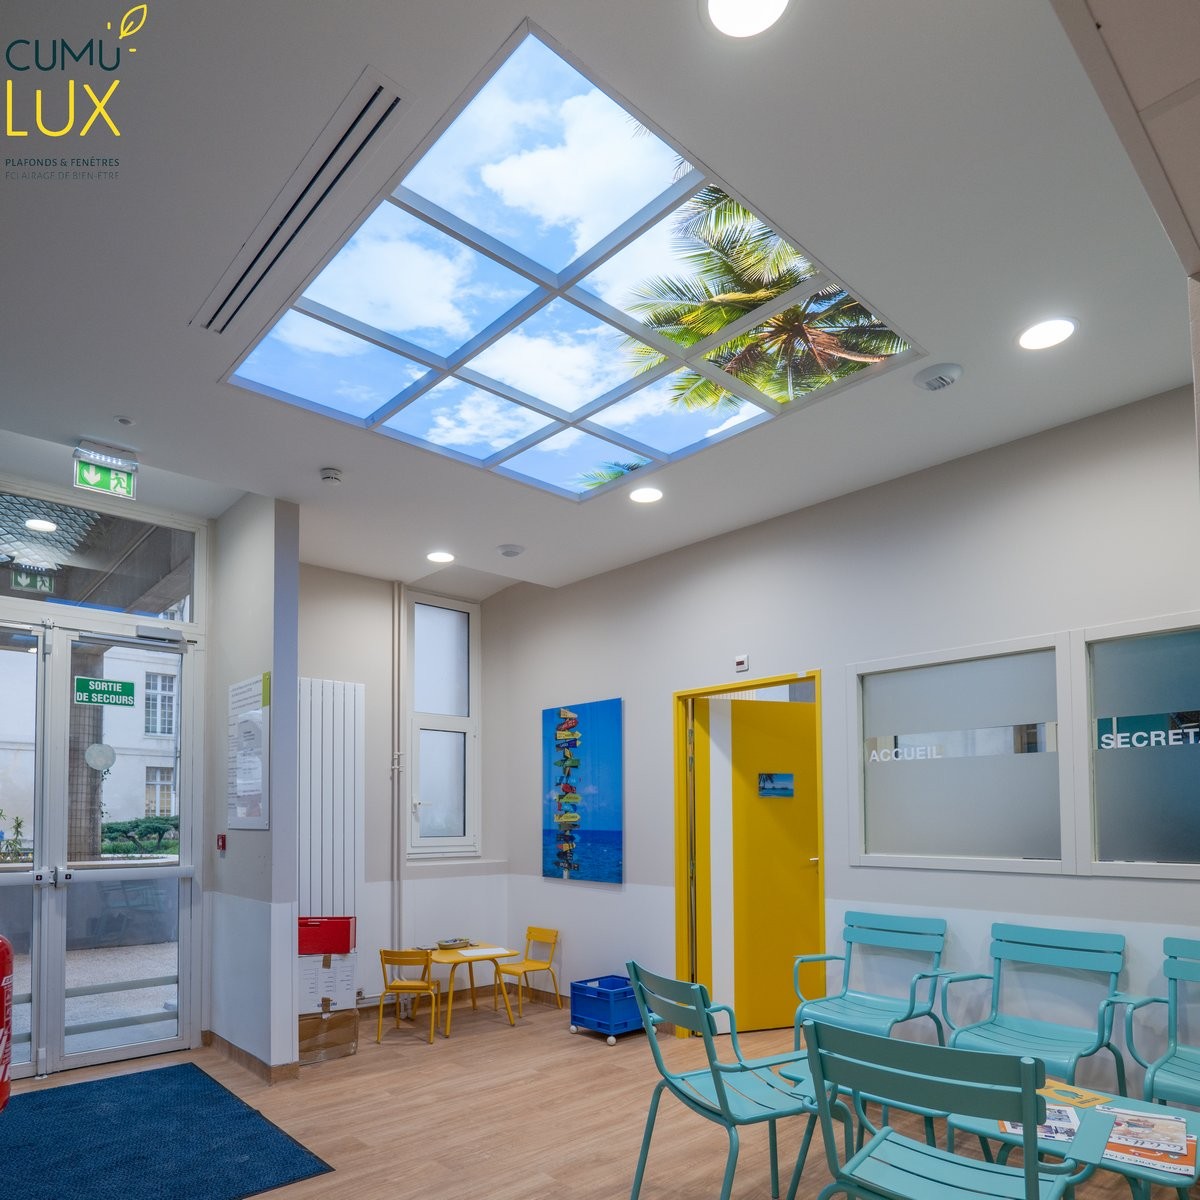 Faux plafond led de 9 dalle led plafond Cumulux 60x60cm pour éclairer une salle pour attente pour enfant.